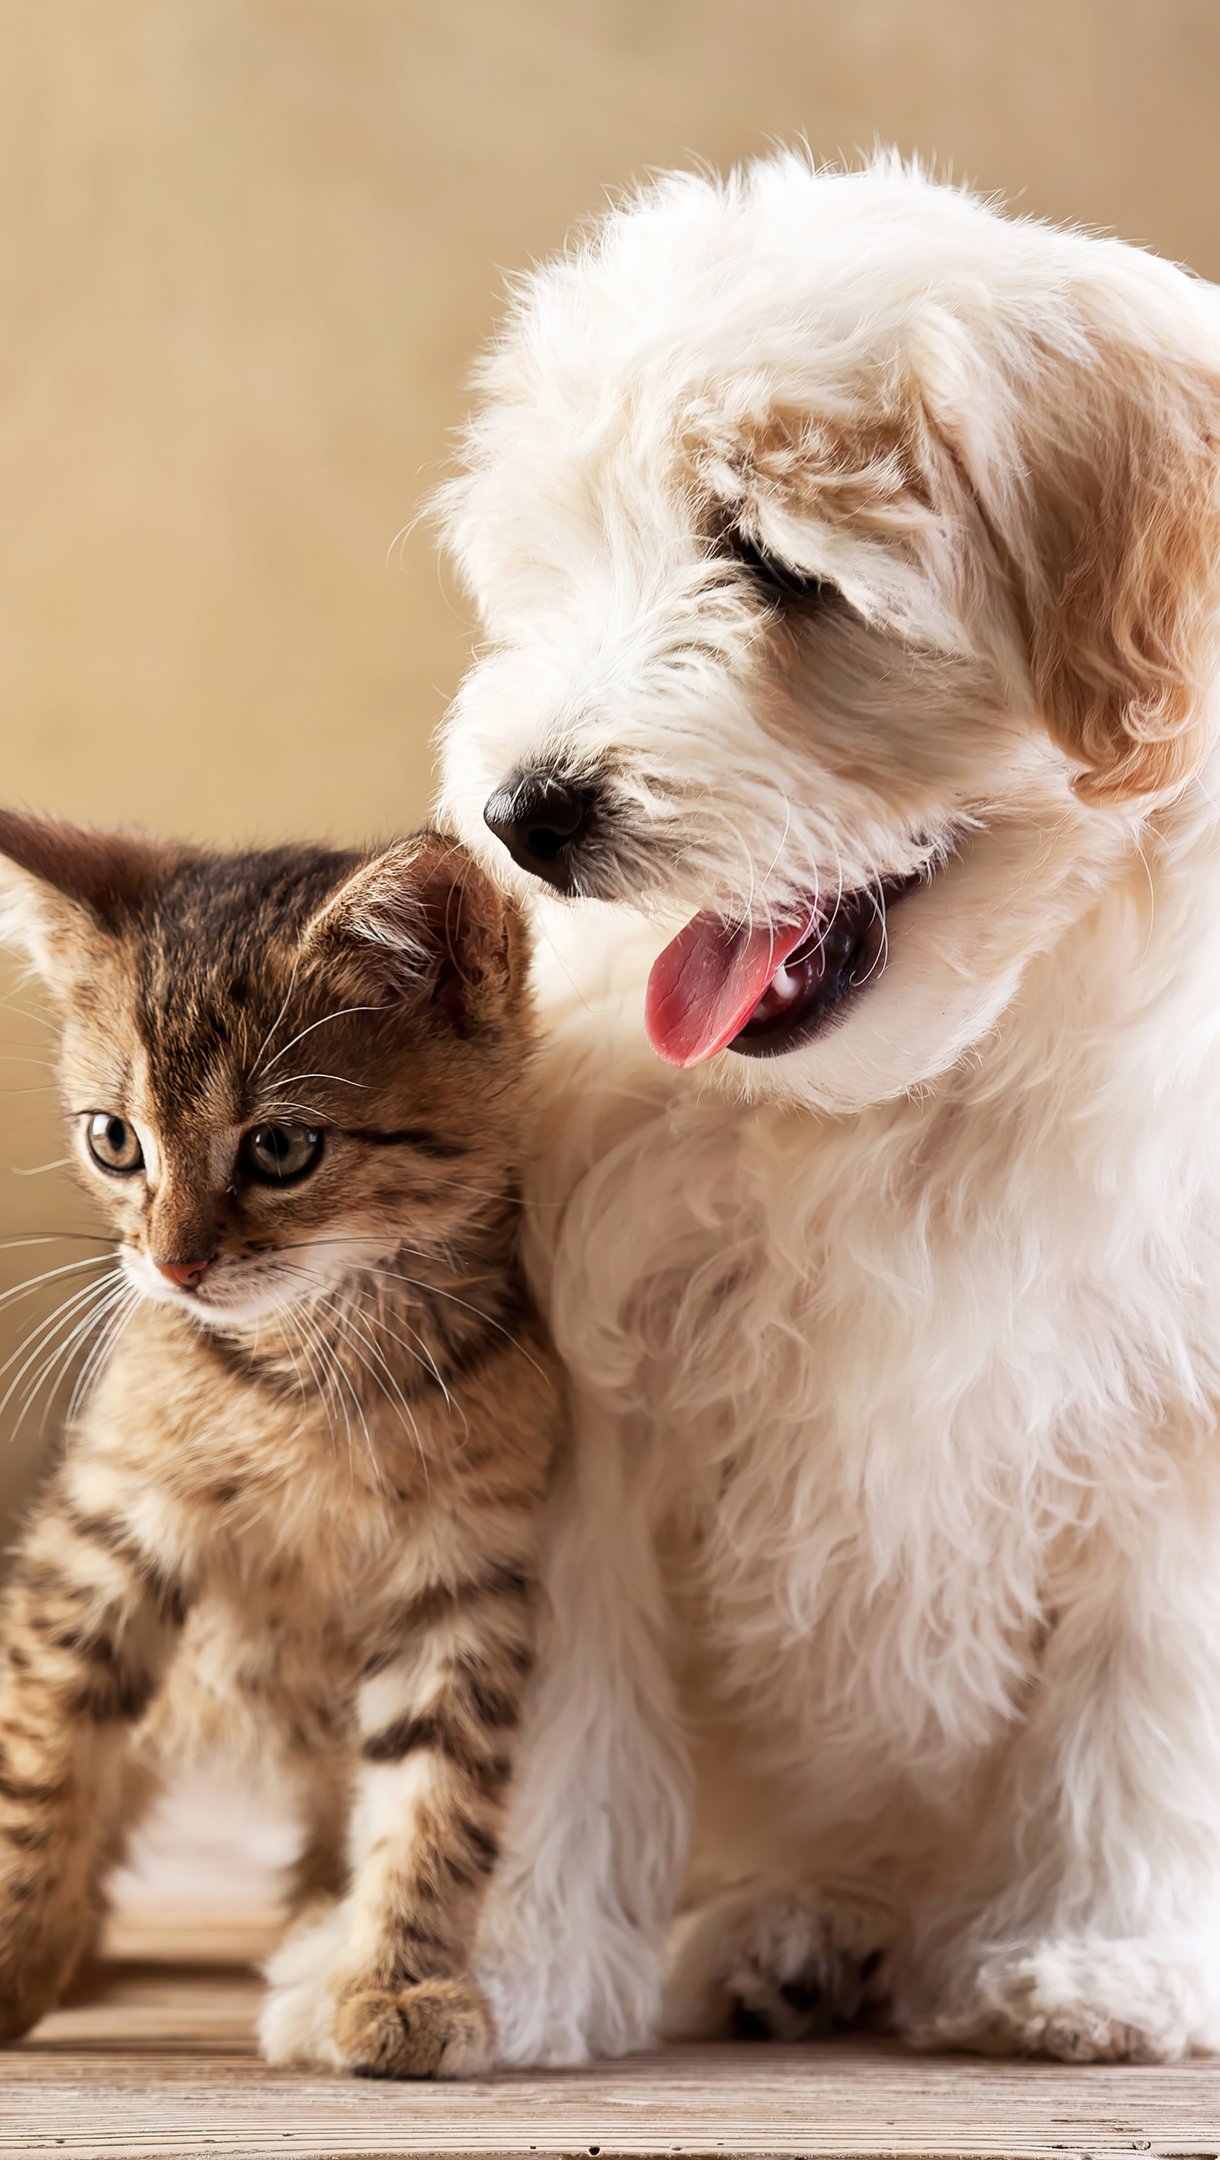 Puppy and kitten Wallpaper 4k Ultra HD